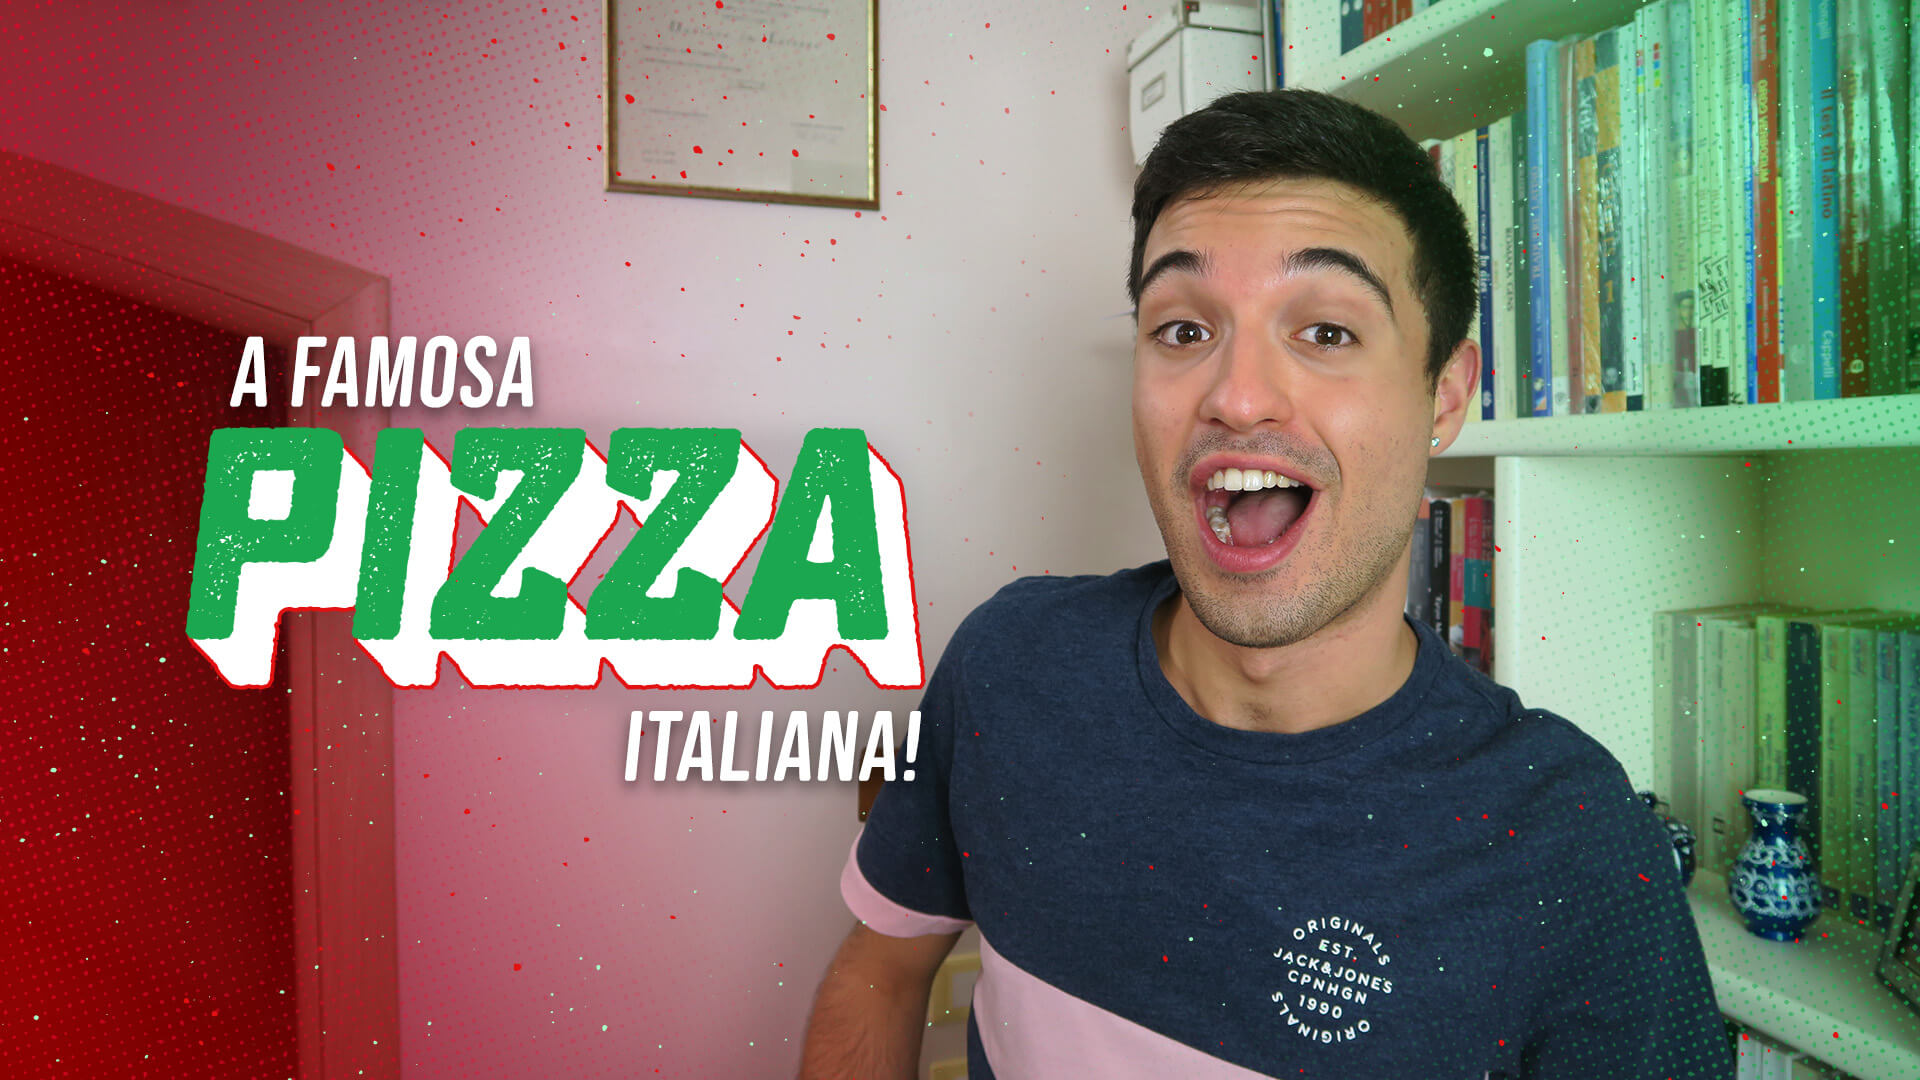 A famosa pizza italiana!